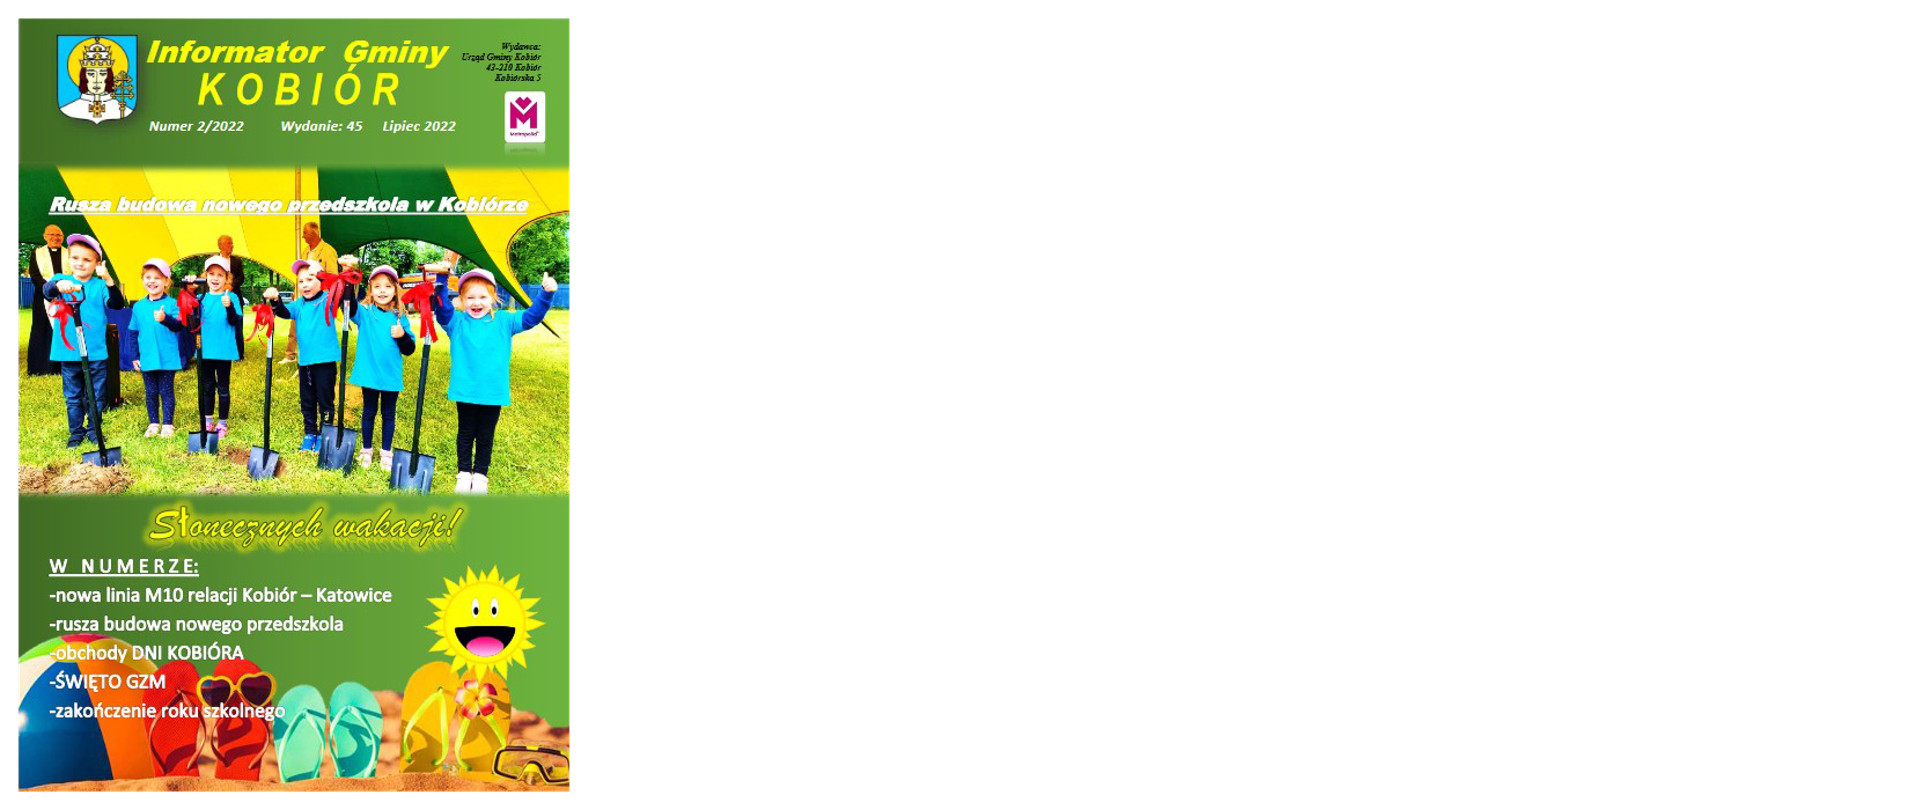 Zdjęcie przedstawia okładkę informatora Gminy Kobiór z kwietnia 2022 roku na której widać gminny namiot i przedszkolaków gminnego przedszkola w Kobiórze